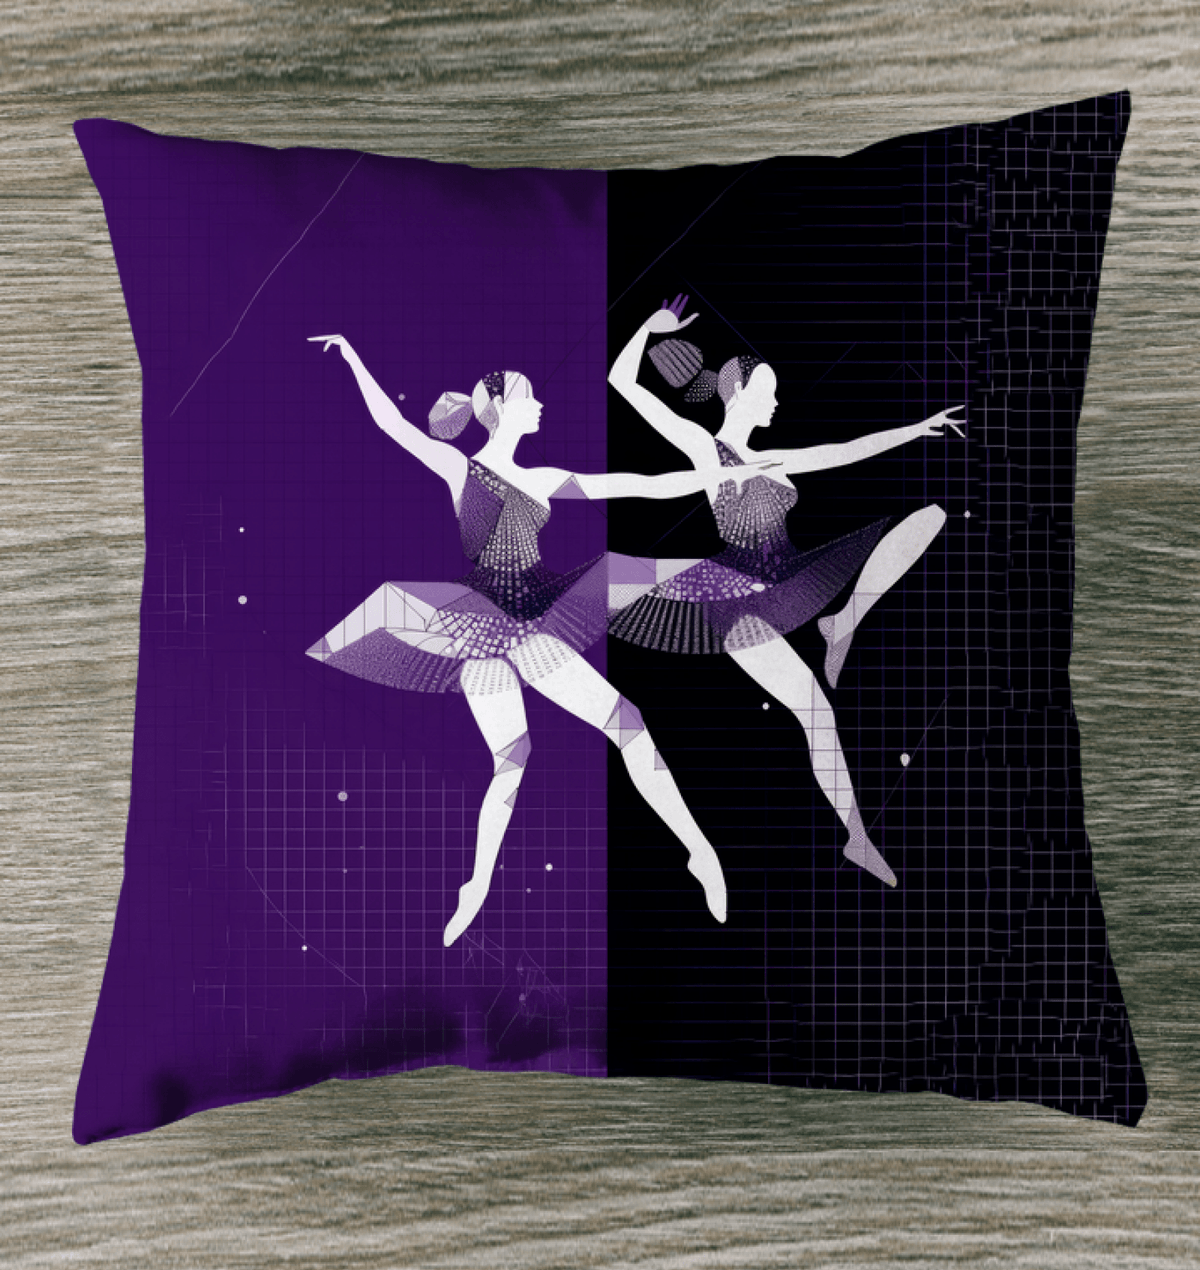 Mystical Women s Dance Motion Outdoor Pillow - Beyond T-shirts